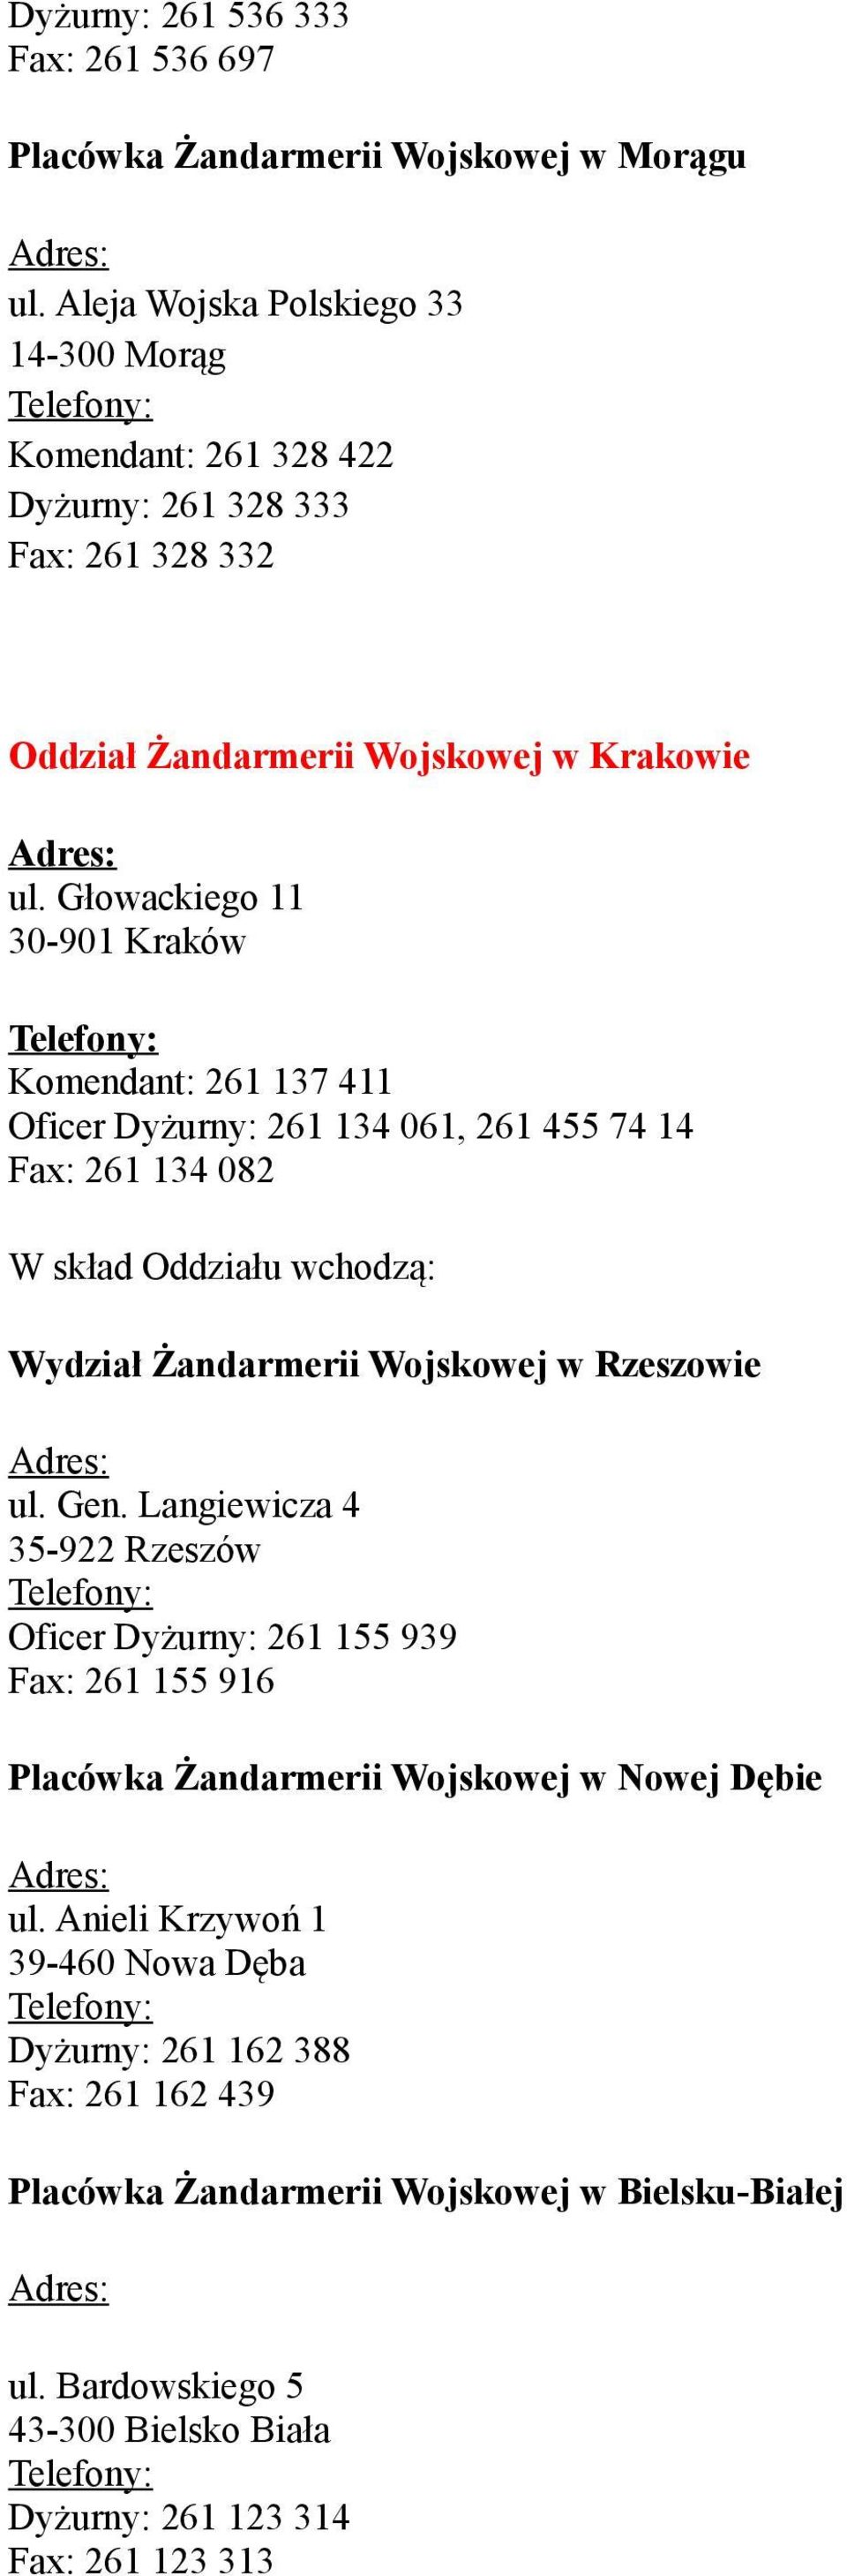 Głowackiego 11 30-901 Kraków Komendant: 261 137 411 Oficer Dyżurny: 261 134 061, 261 455 74 14 Fax: 261 134 082 W skład Oddziału wchodzą: Wydział Żandarmerii Wojskowej w Rzeszowie ul.